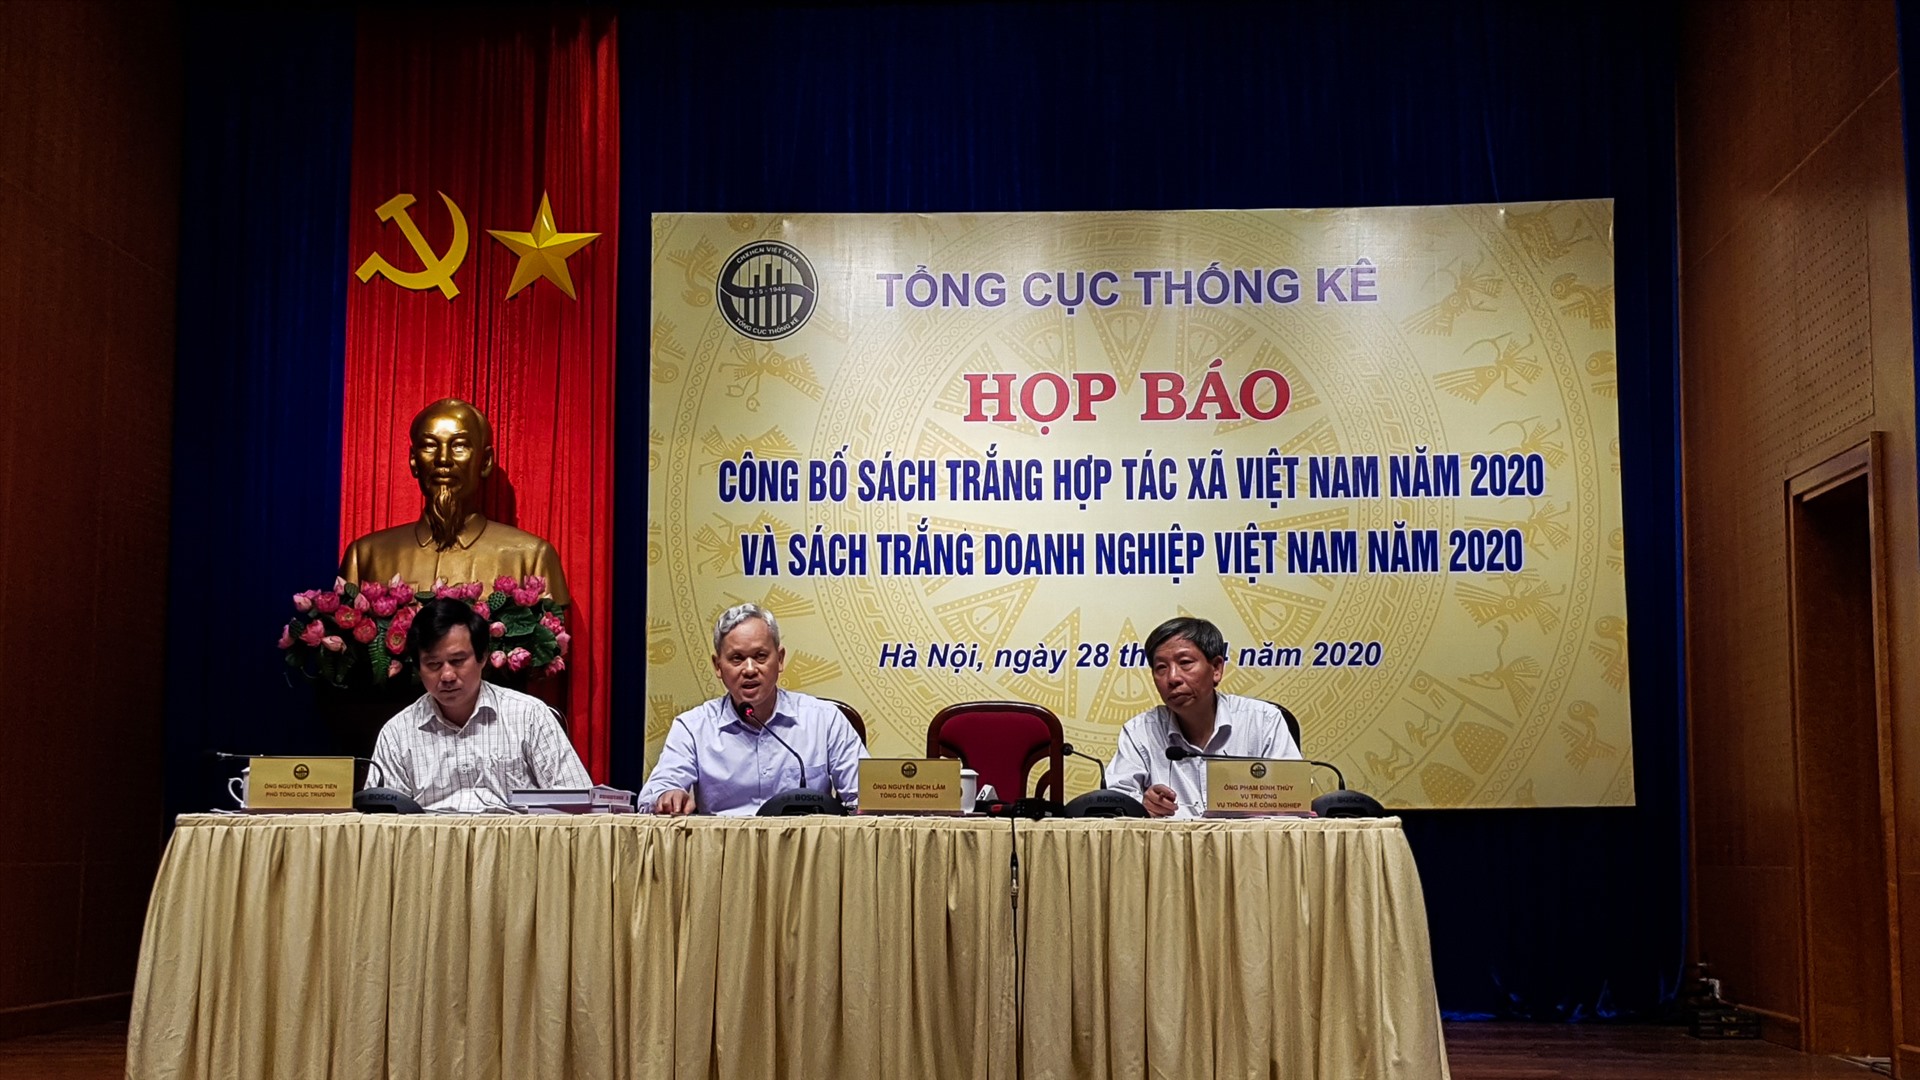 Họp báo công bố Sách trắng Hợp tác xã Việt Nam và Sách trắng Doanh nghiệp Việt Nam năm 2020. Ảnh: Phan Anh